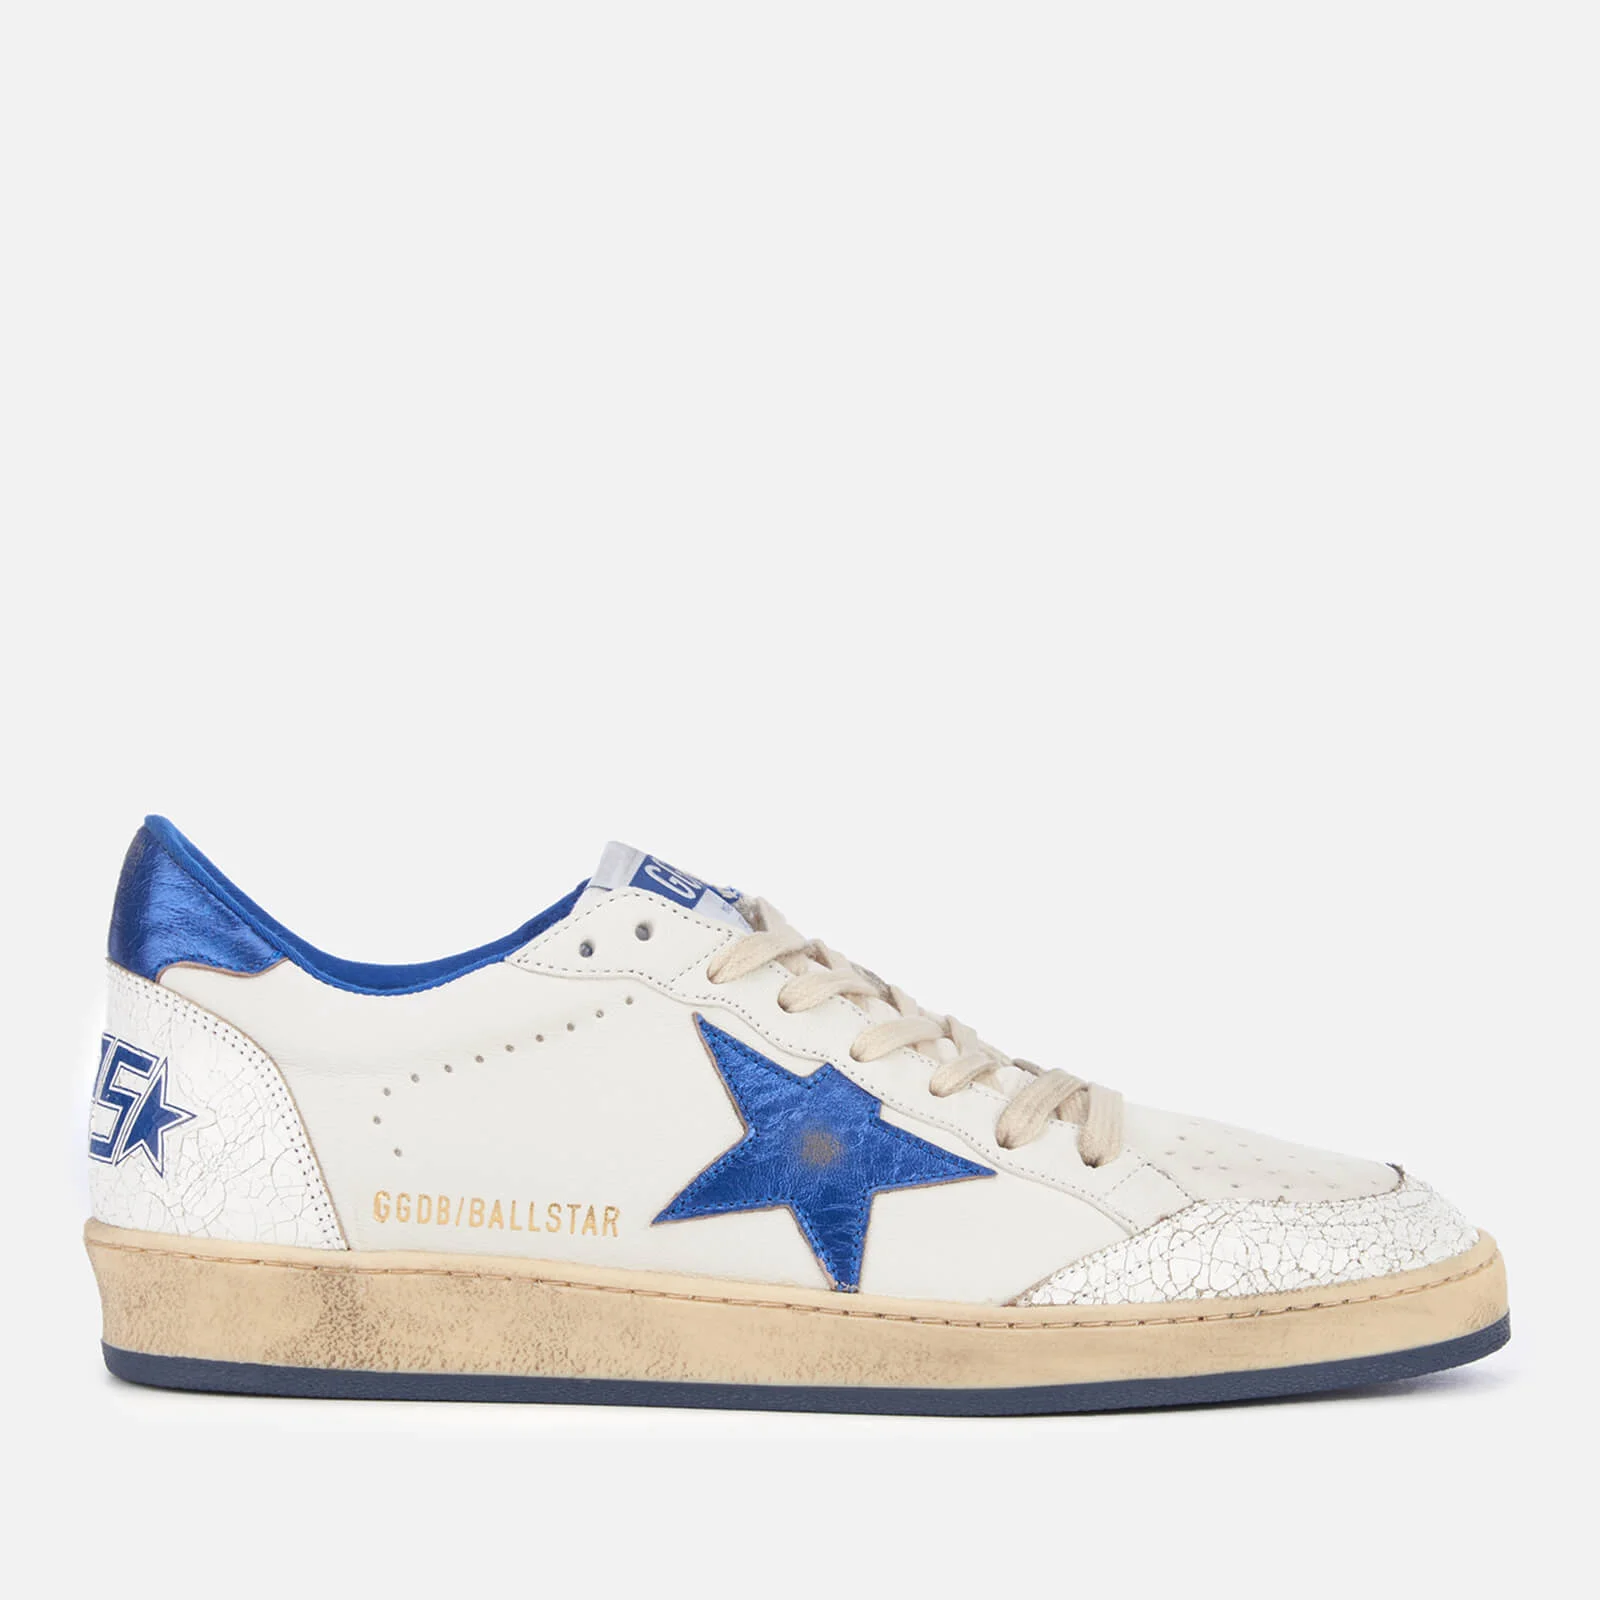 Golden Goose Men's Ball Star Sneakers - White/Blue Image 1